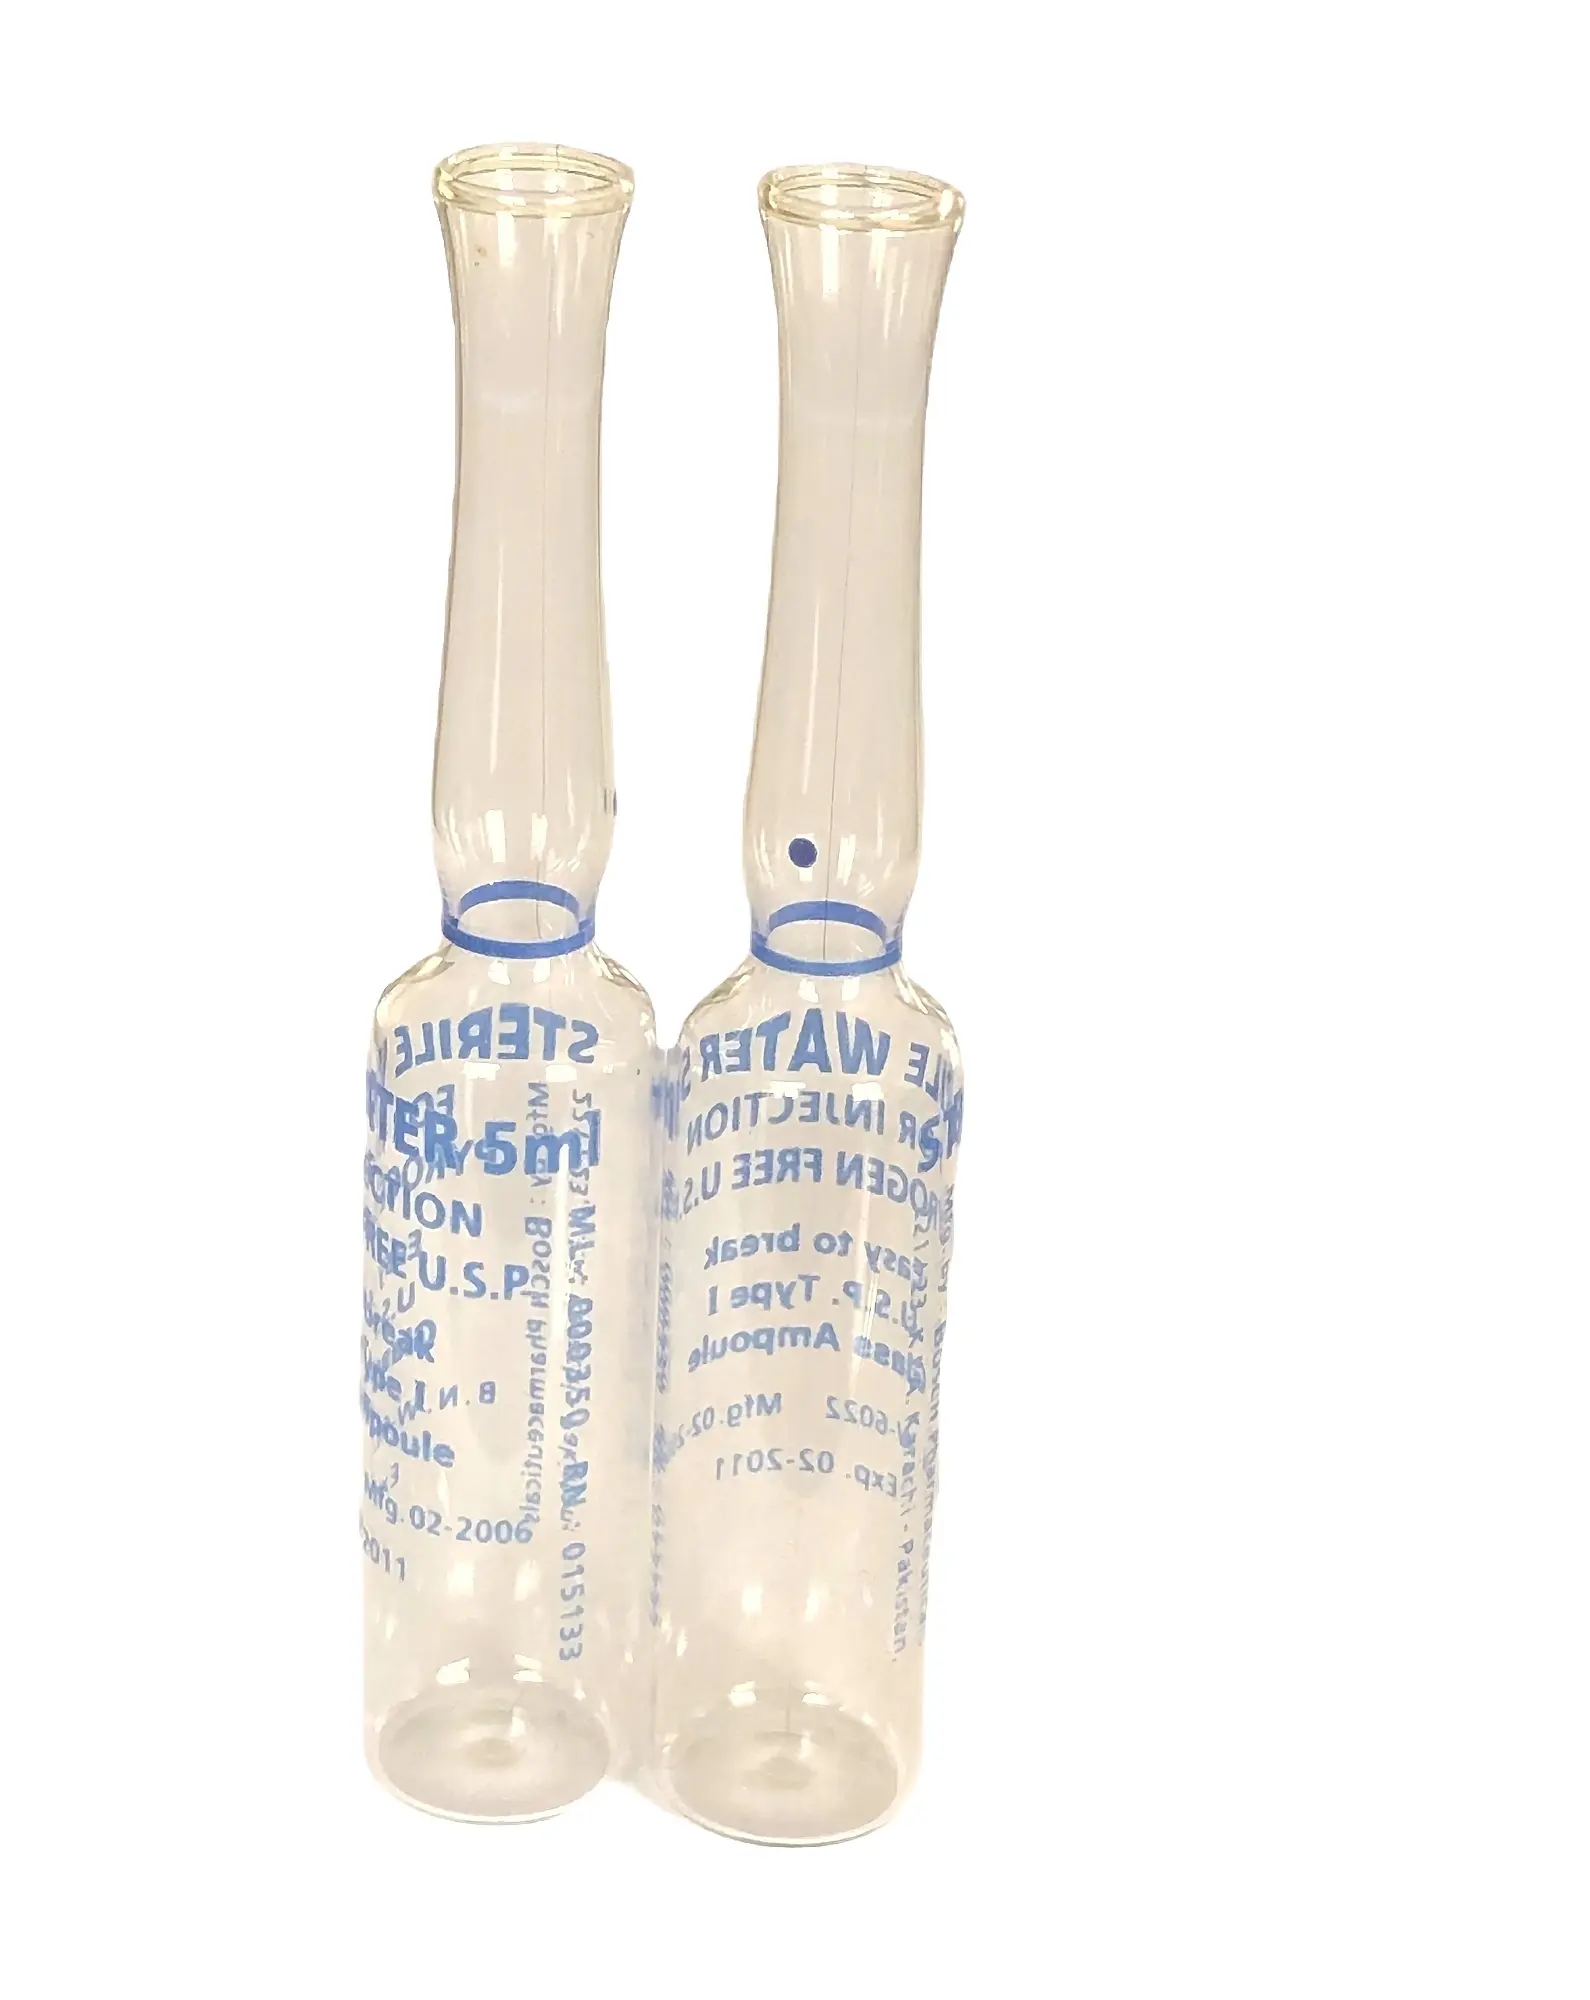 ISO vacía ácido hyaluronique de ampolla de vidrio de botella